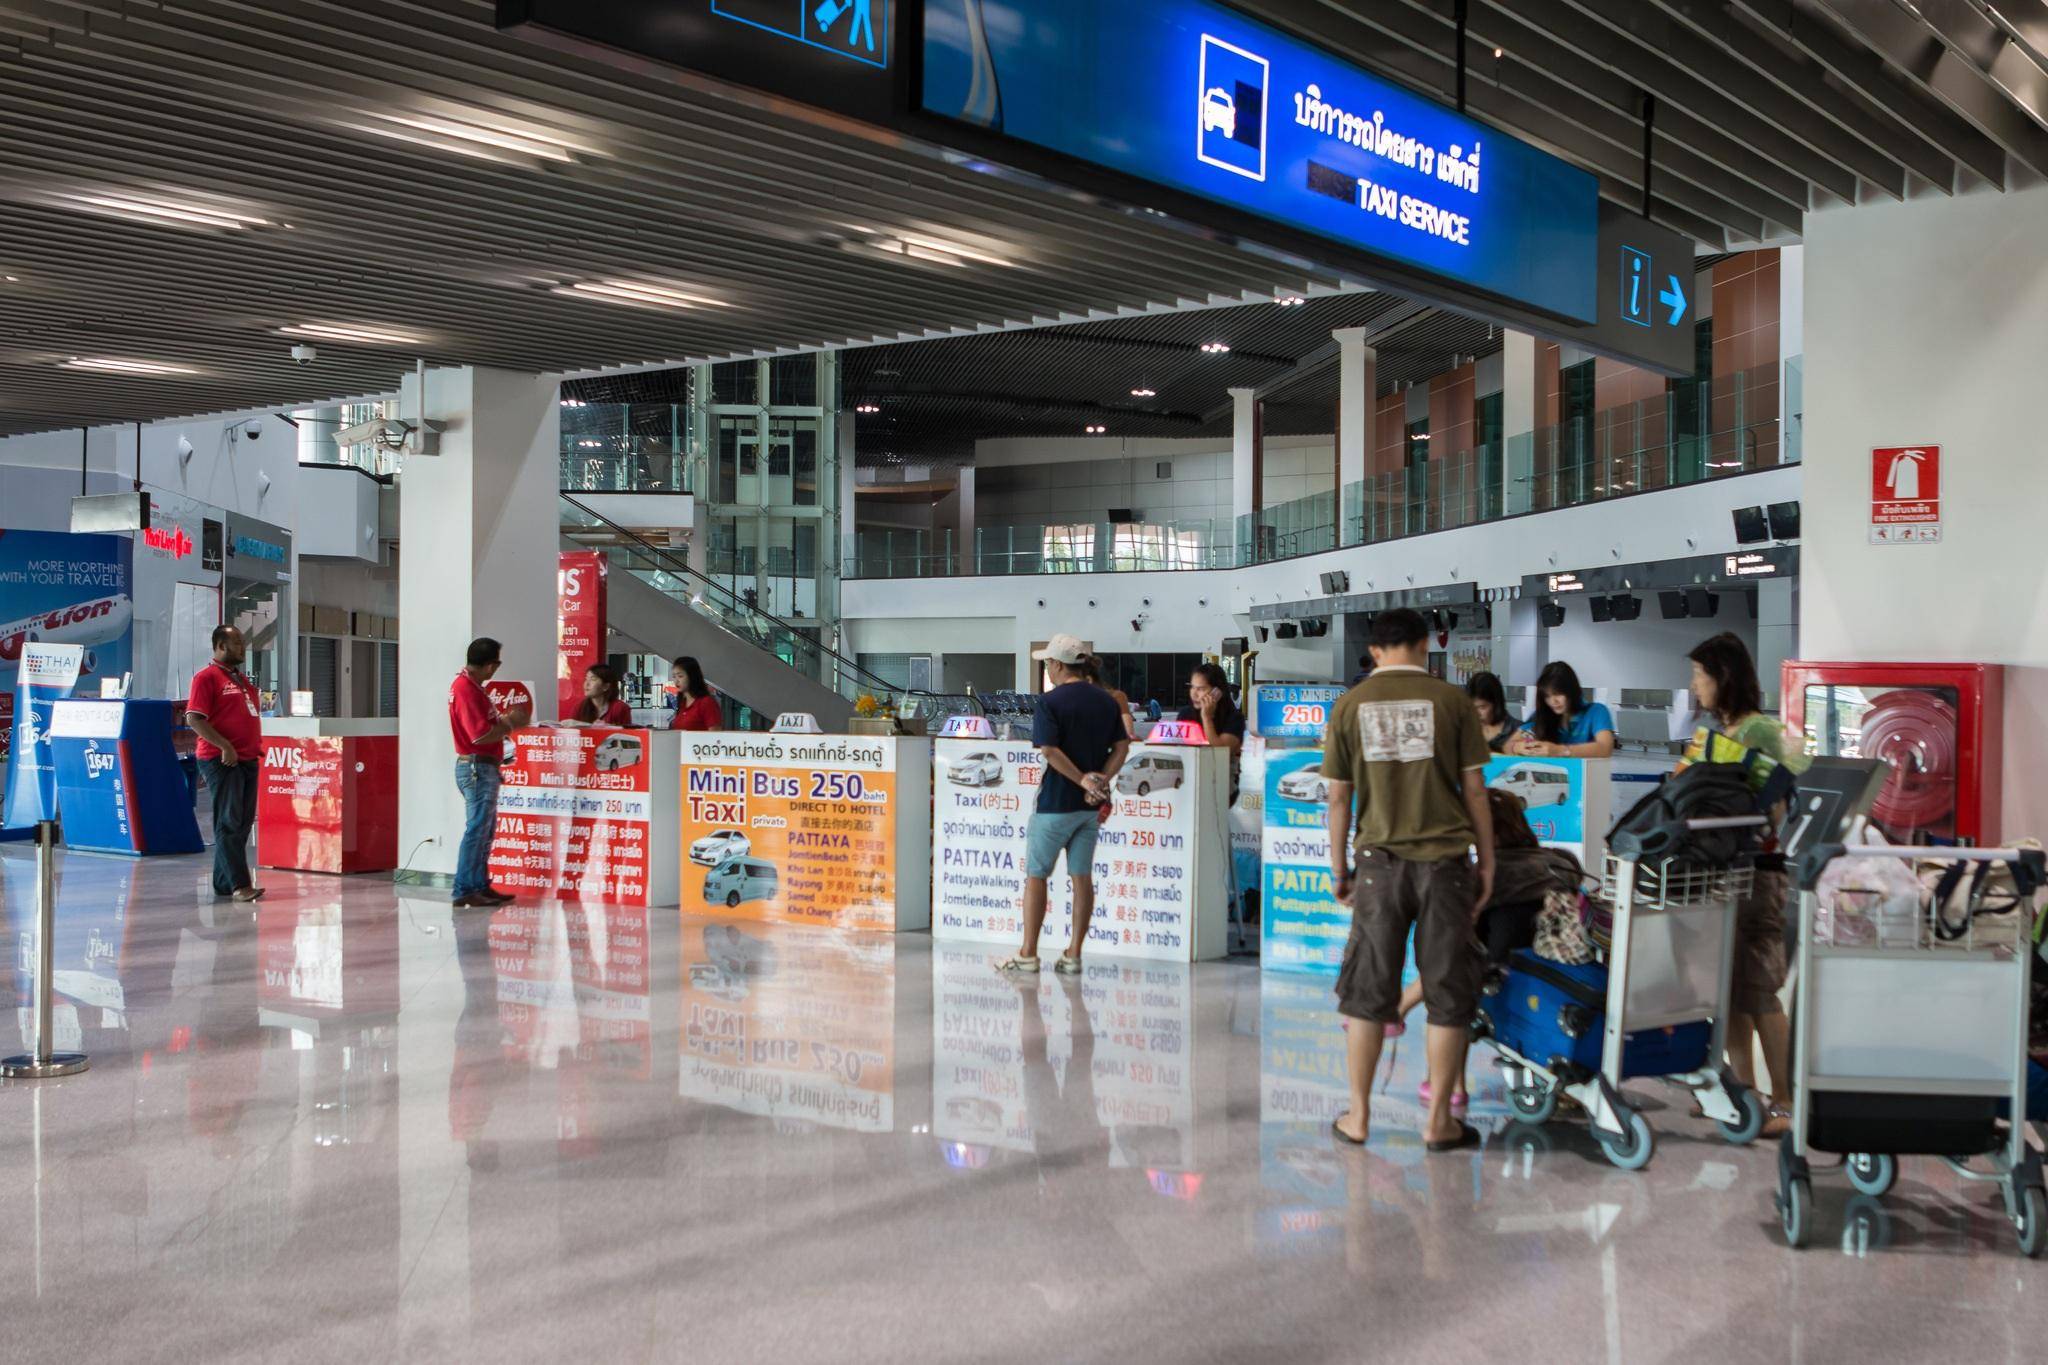 Аэропорт утапао, паттайя: онлайн табло, рейсы, как добраться